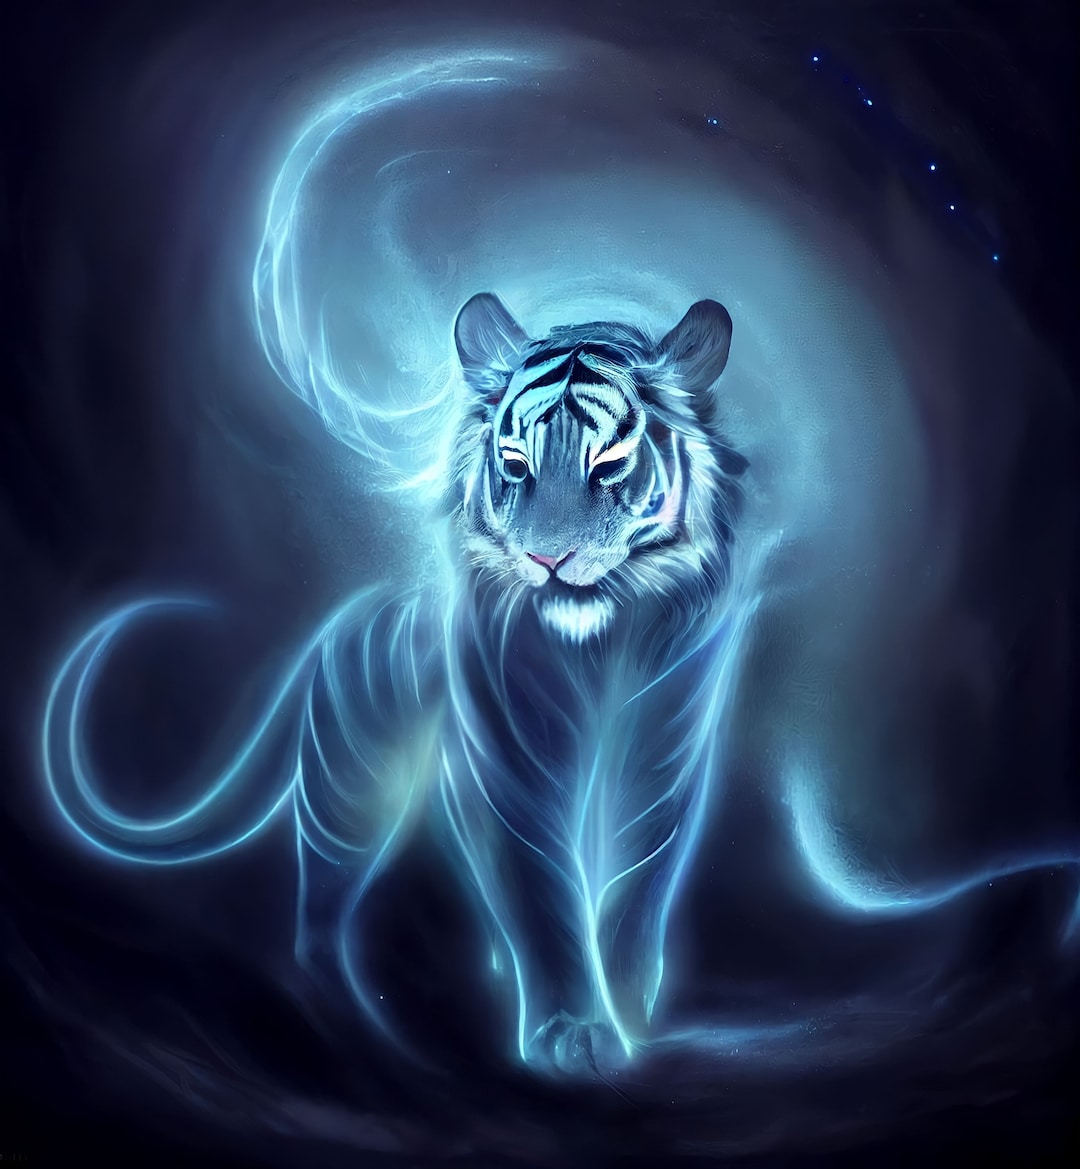 Spectral Tiger Download Spectral Tiger Instant Downloadable - Etsy